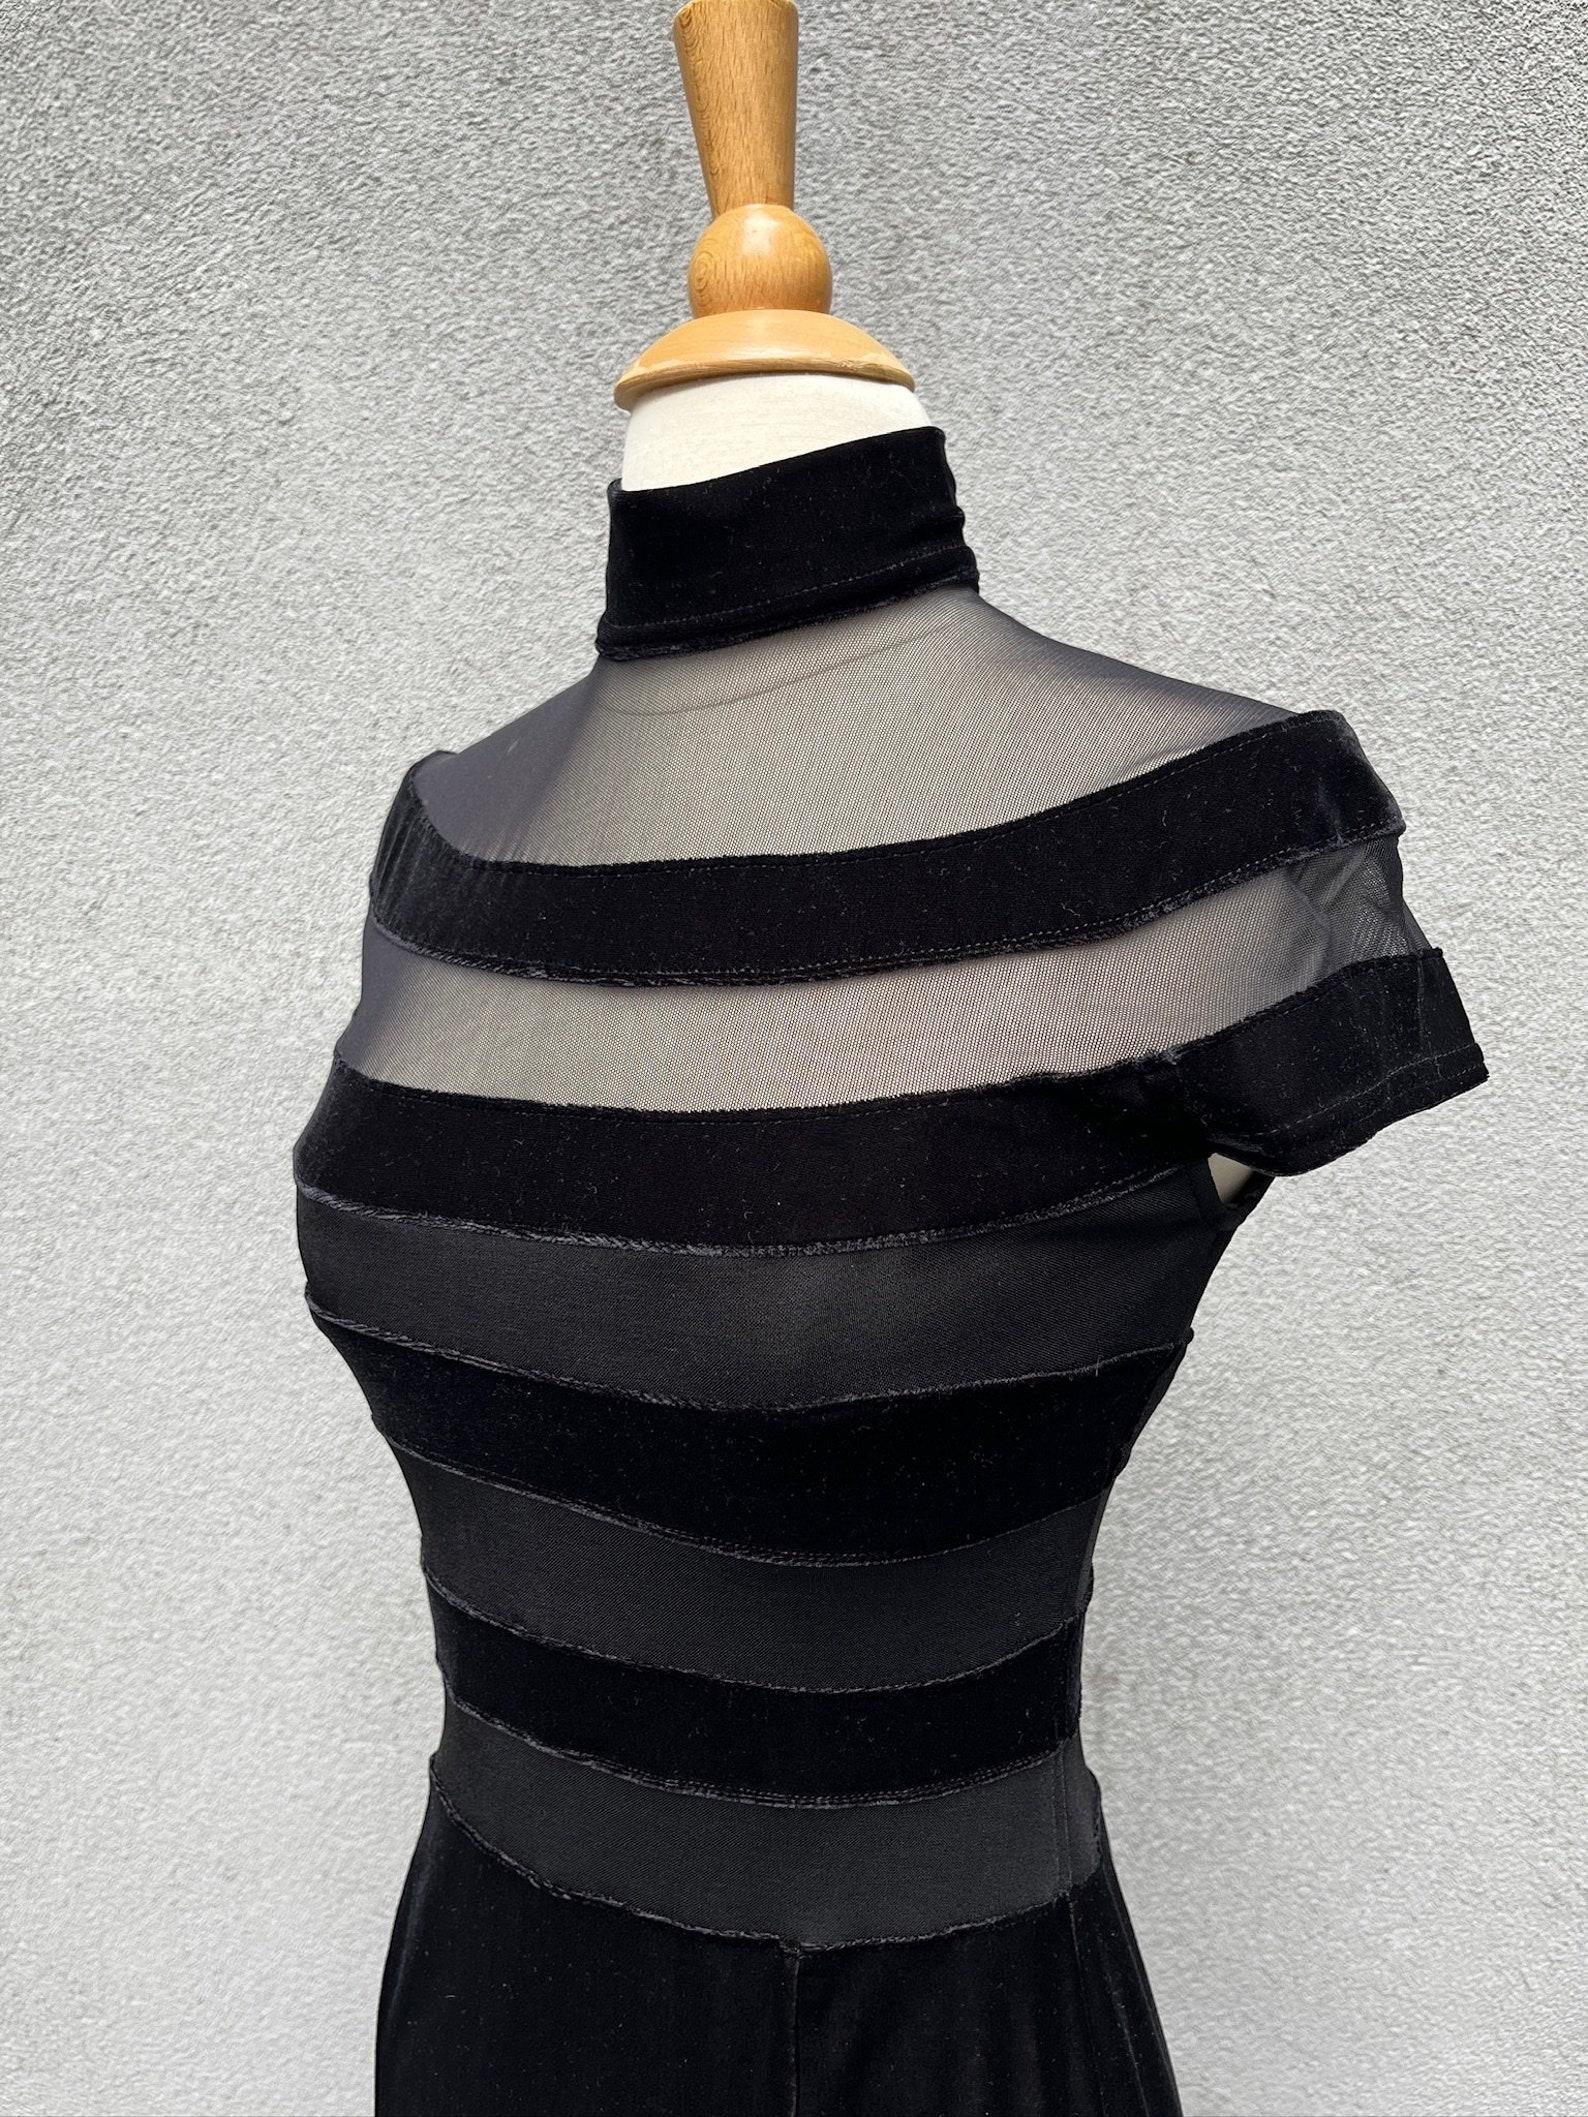 Lillie Rubin velvet paneled body con mini dress For Sale 4